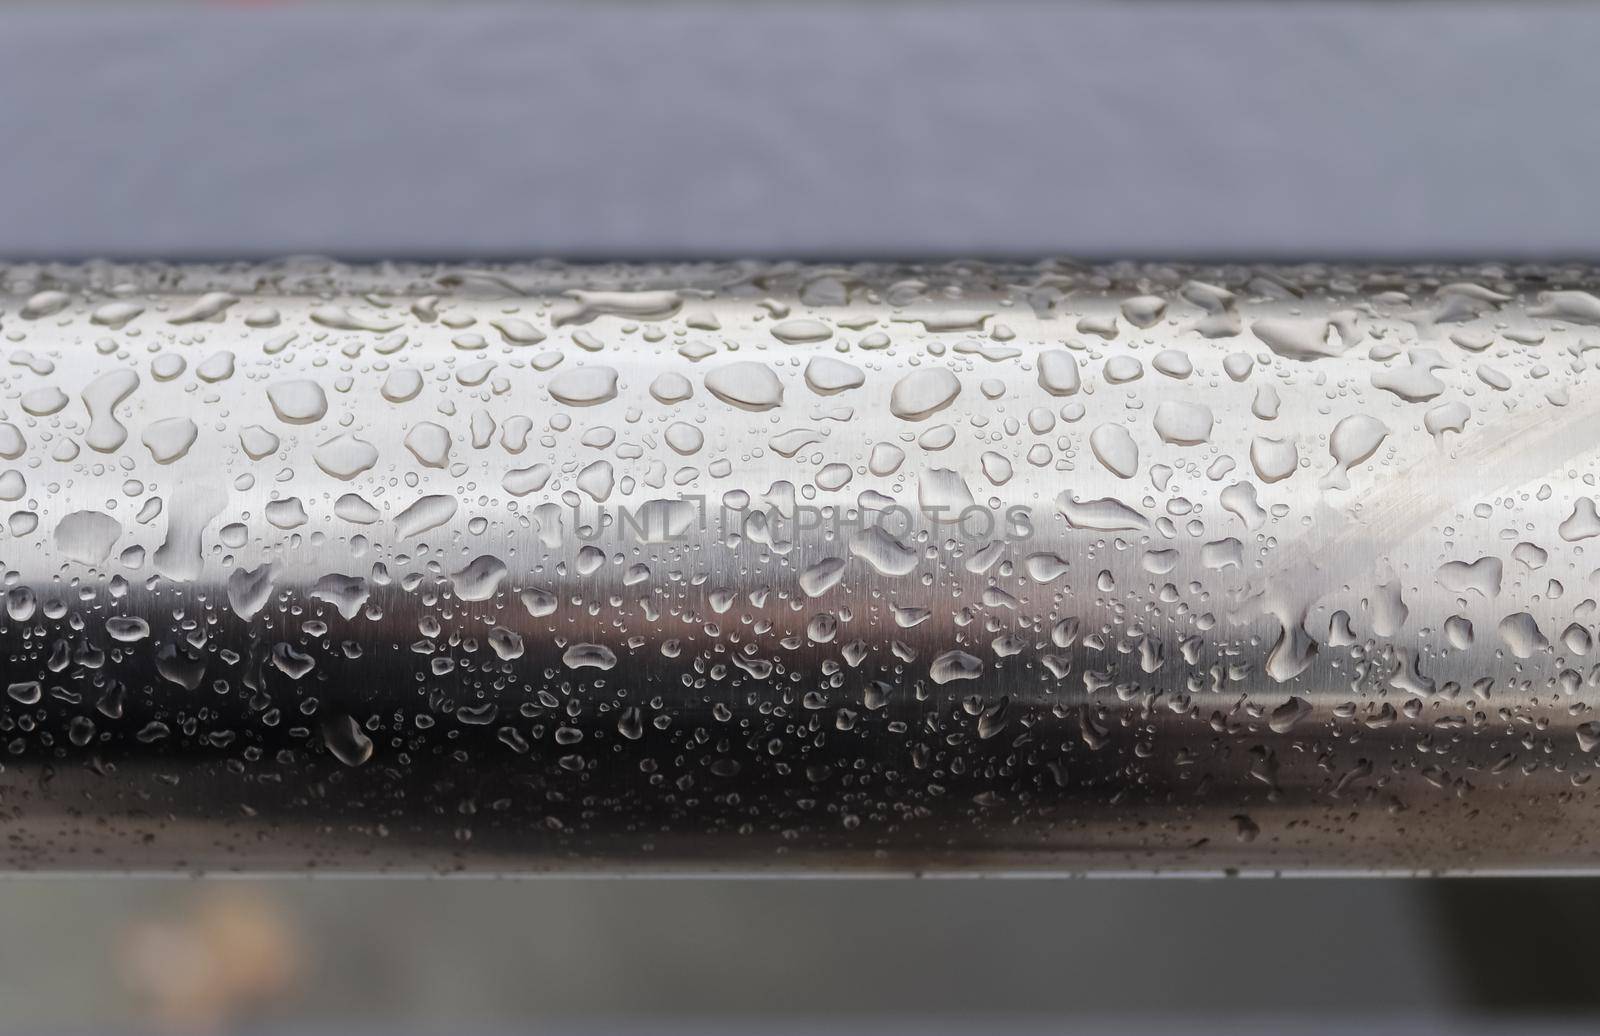 Rain drops on a black metallic surface in a closeup view